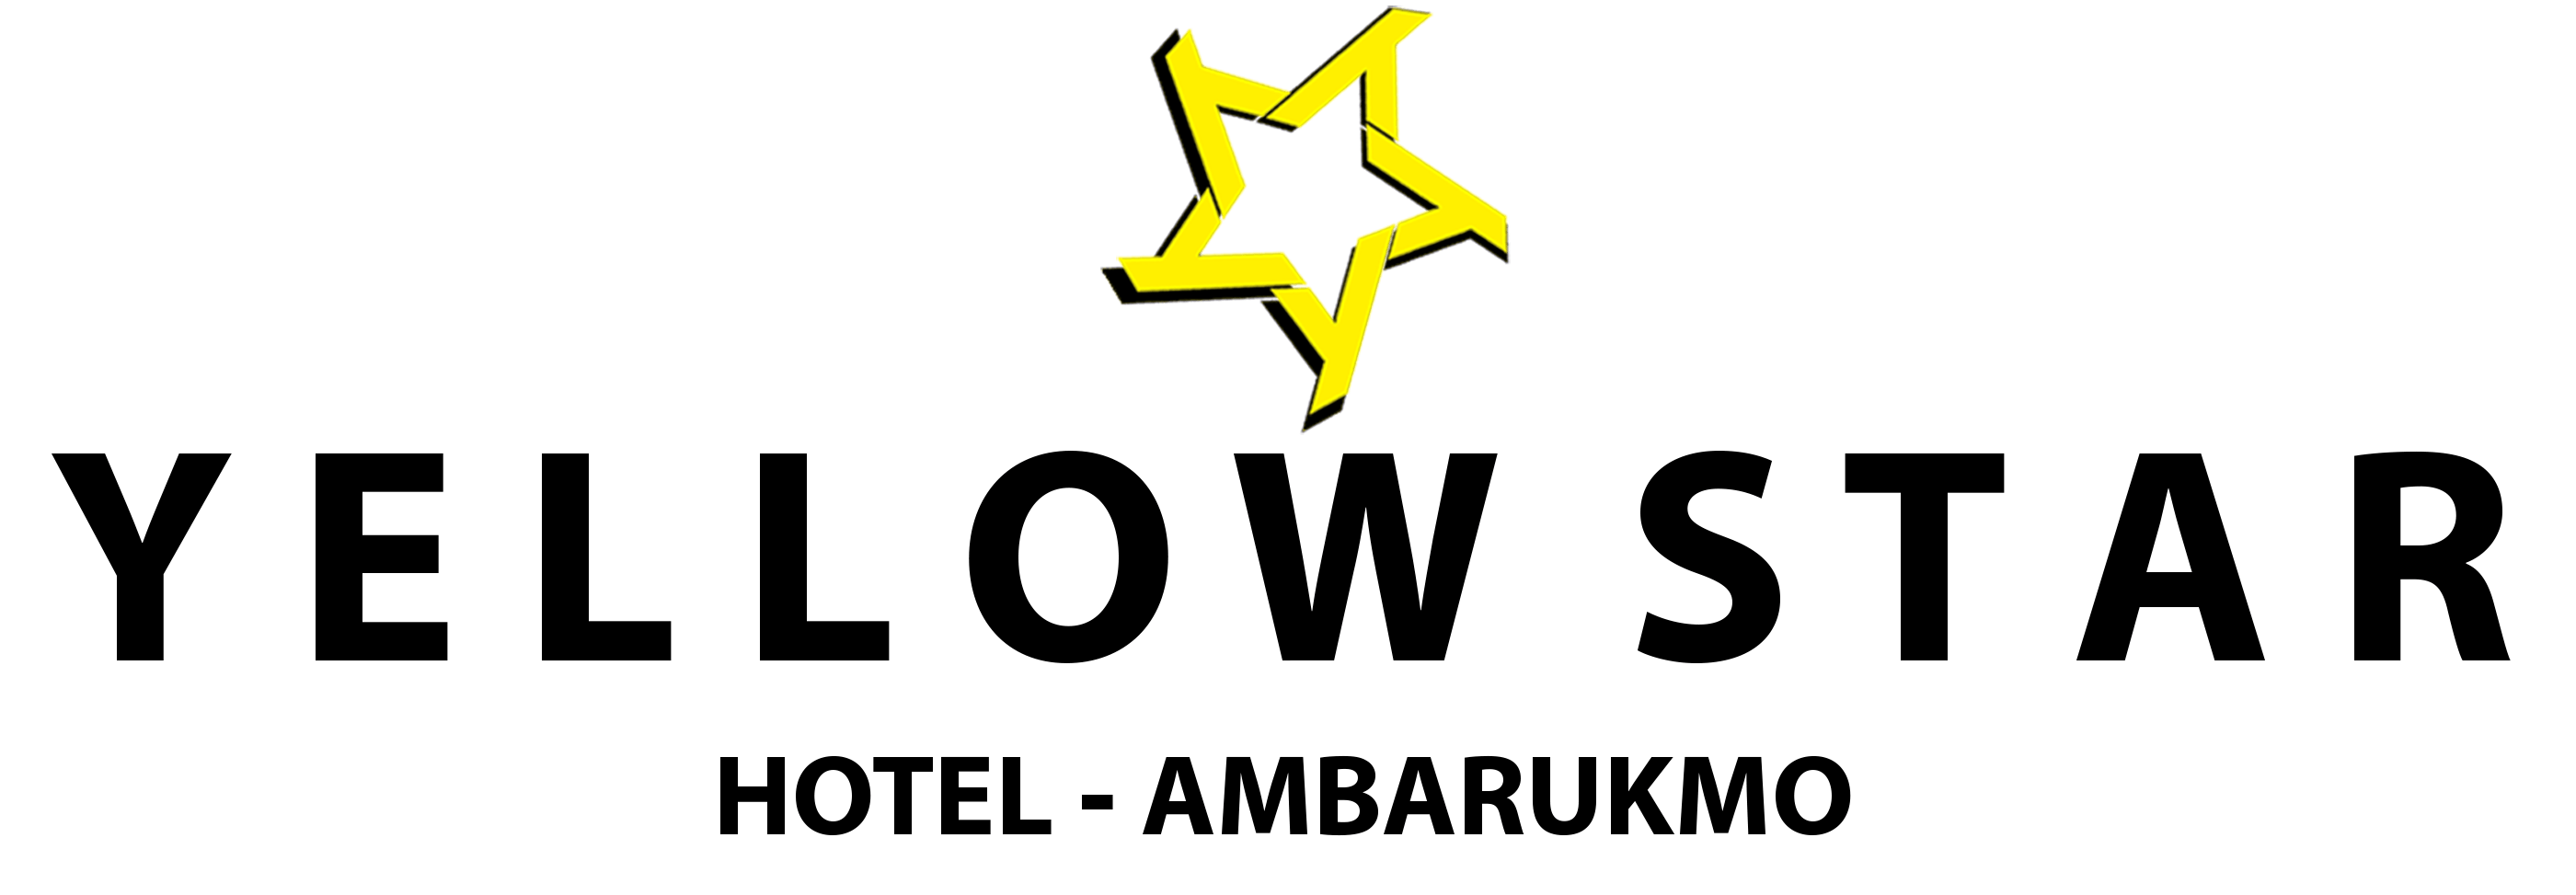 Yellow Star Logo - Yellow Star Hotel